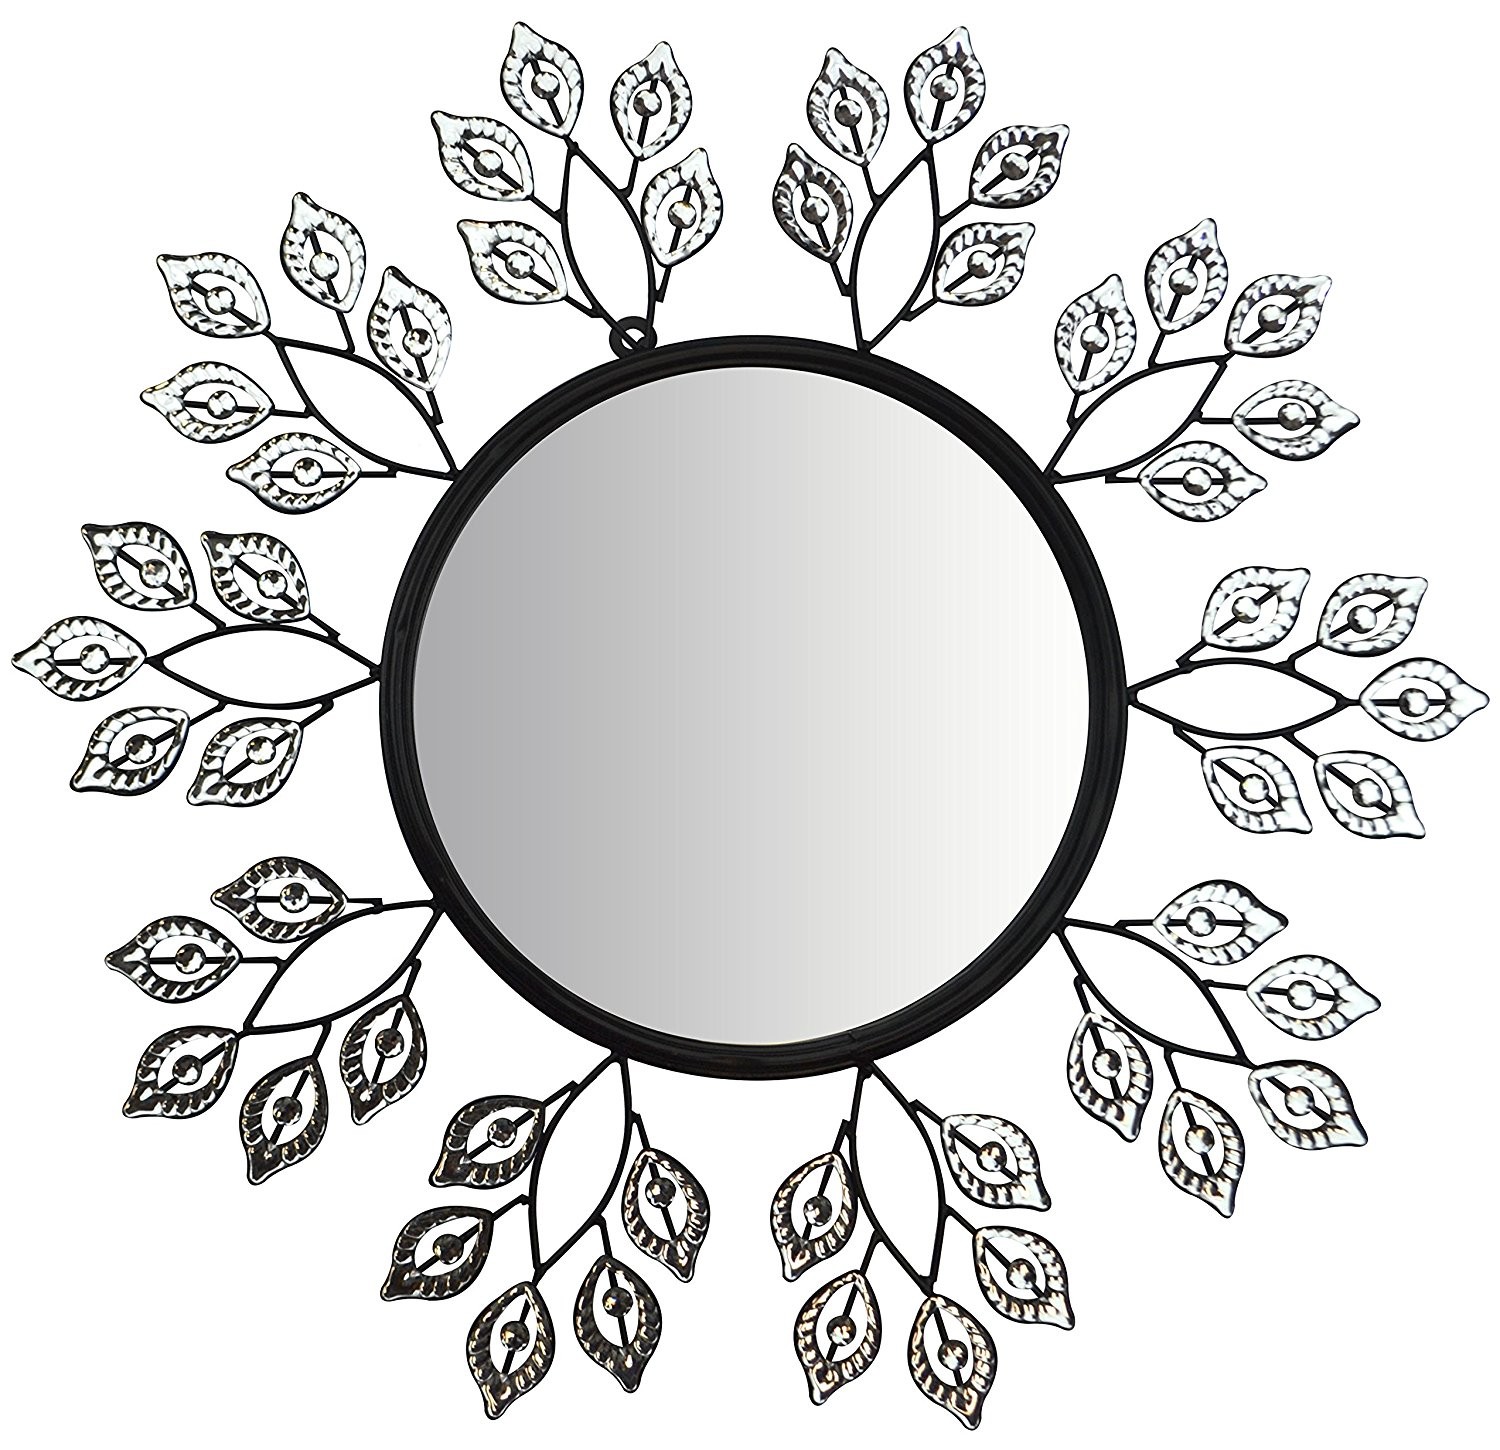 Болгарское круглое зеркало рисунок